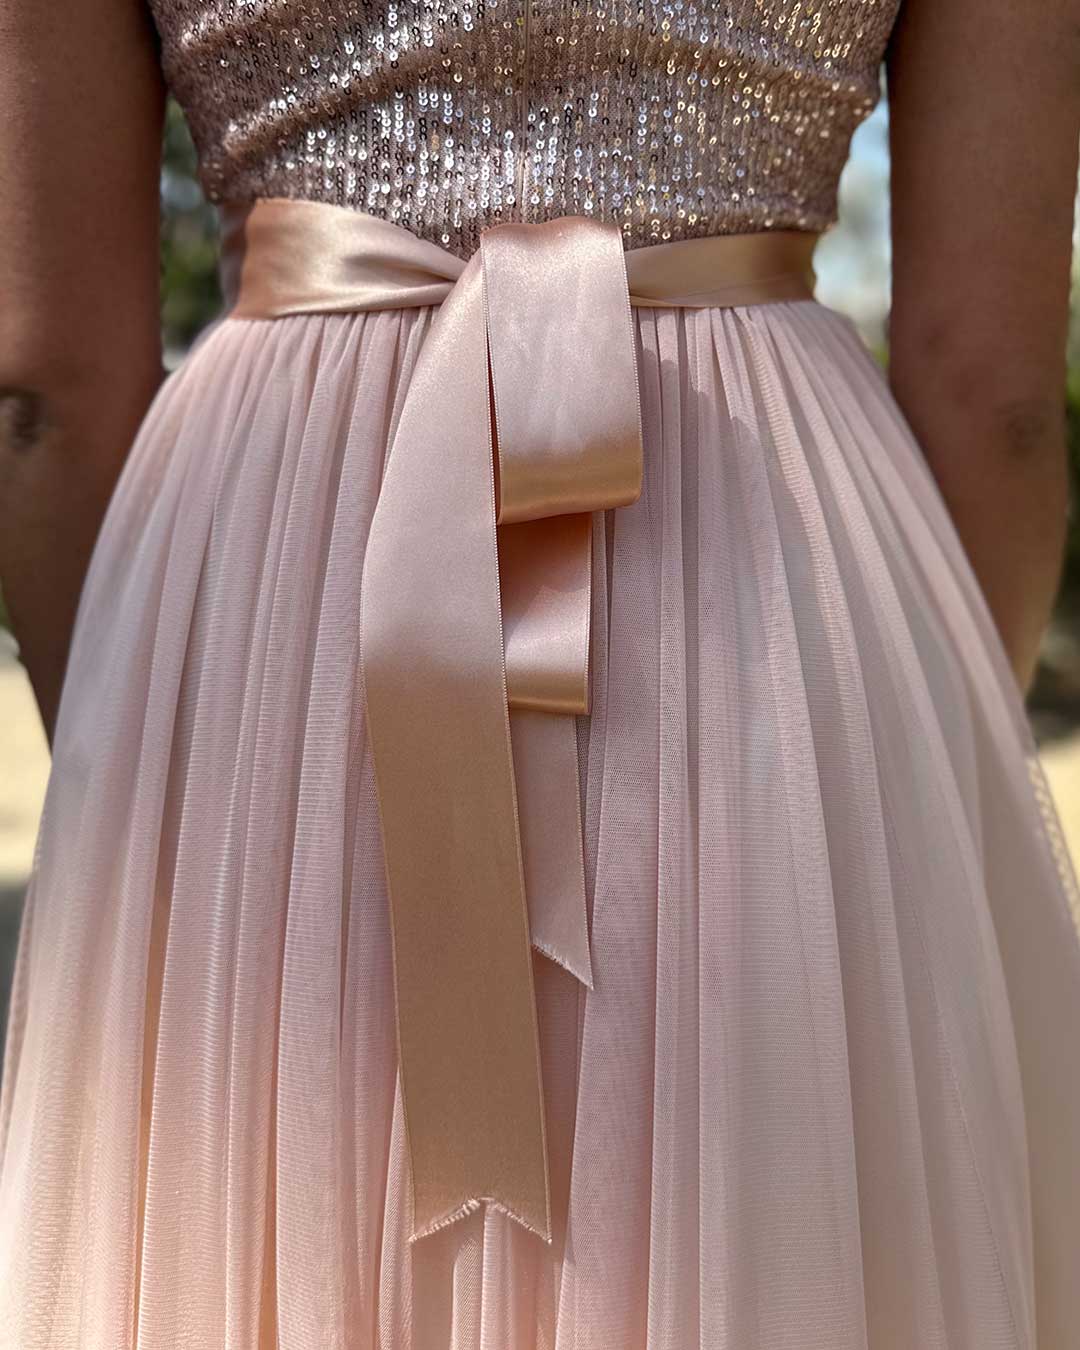 Detalle del cinturón del vestido rosado en tela de raso.